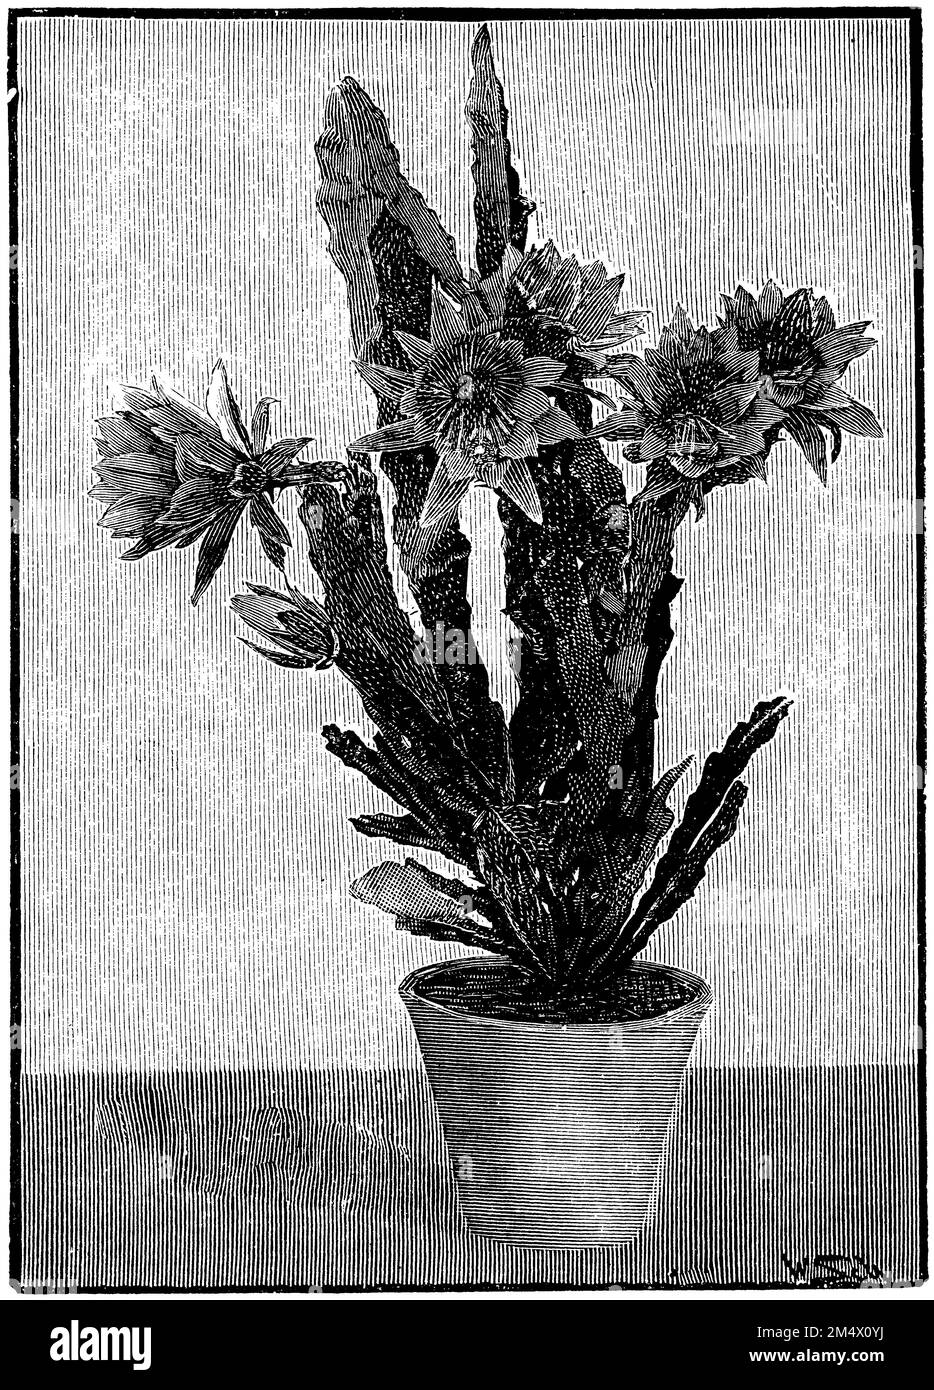 Disocactus ackermannii, Disocactus ackermannii,  (botany book, 1907), Ackermanns Blattkaktus, Disocactus ackermannii Stock Photo